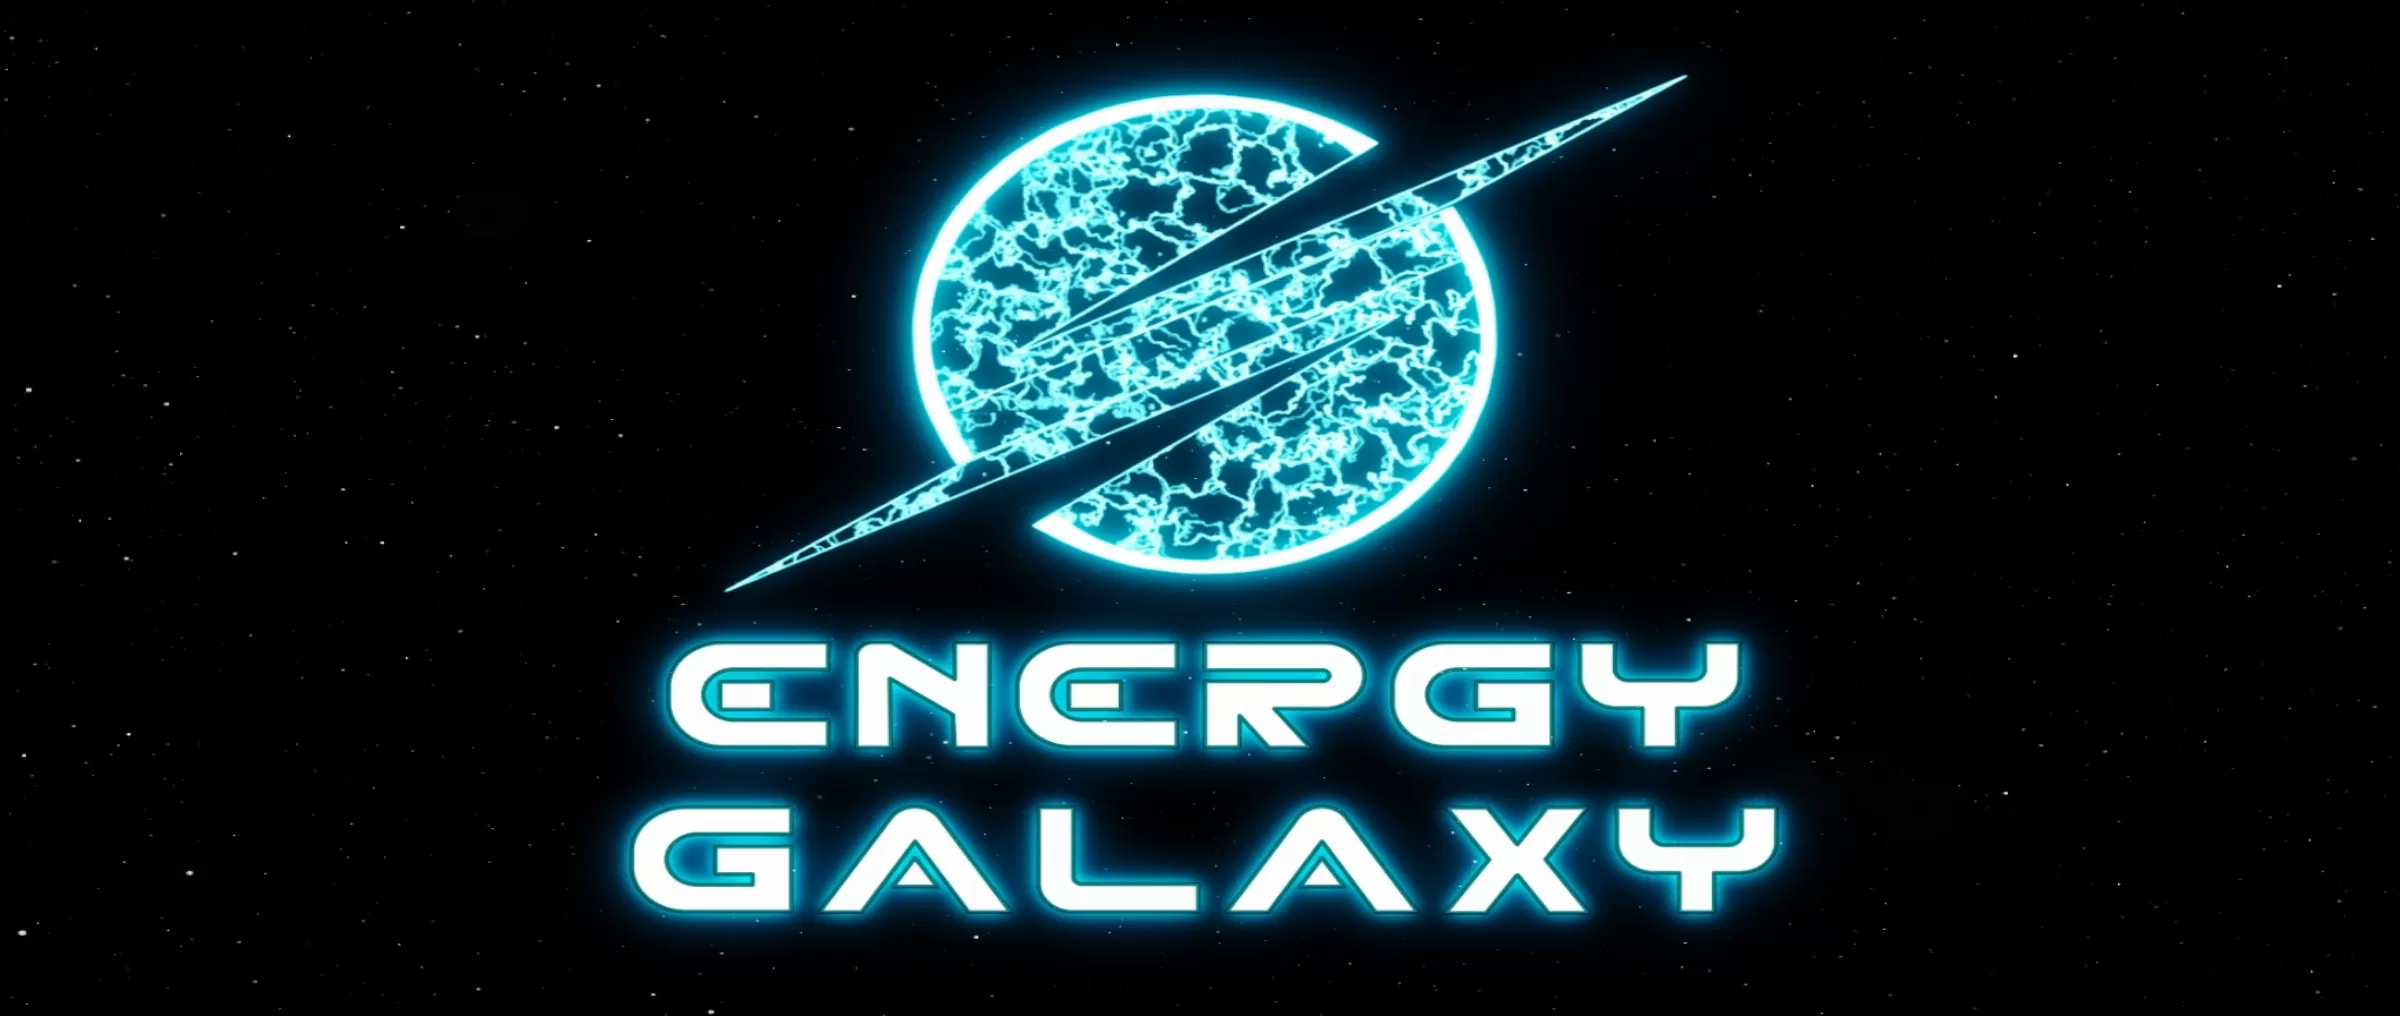 Energy Galaxy dapps